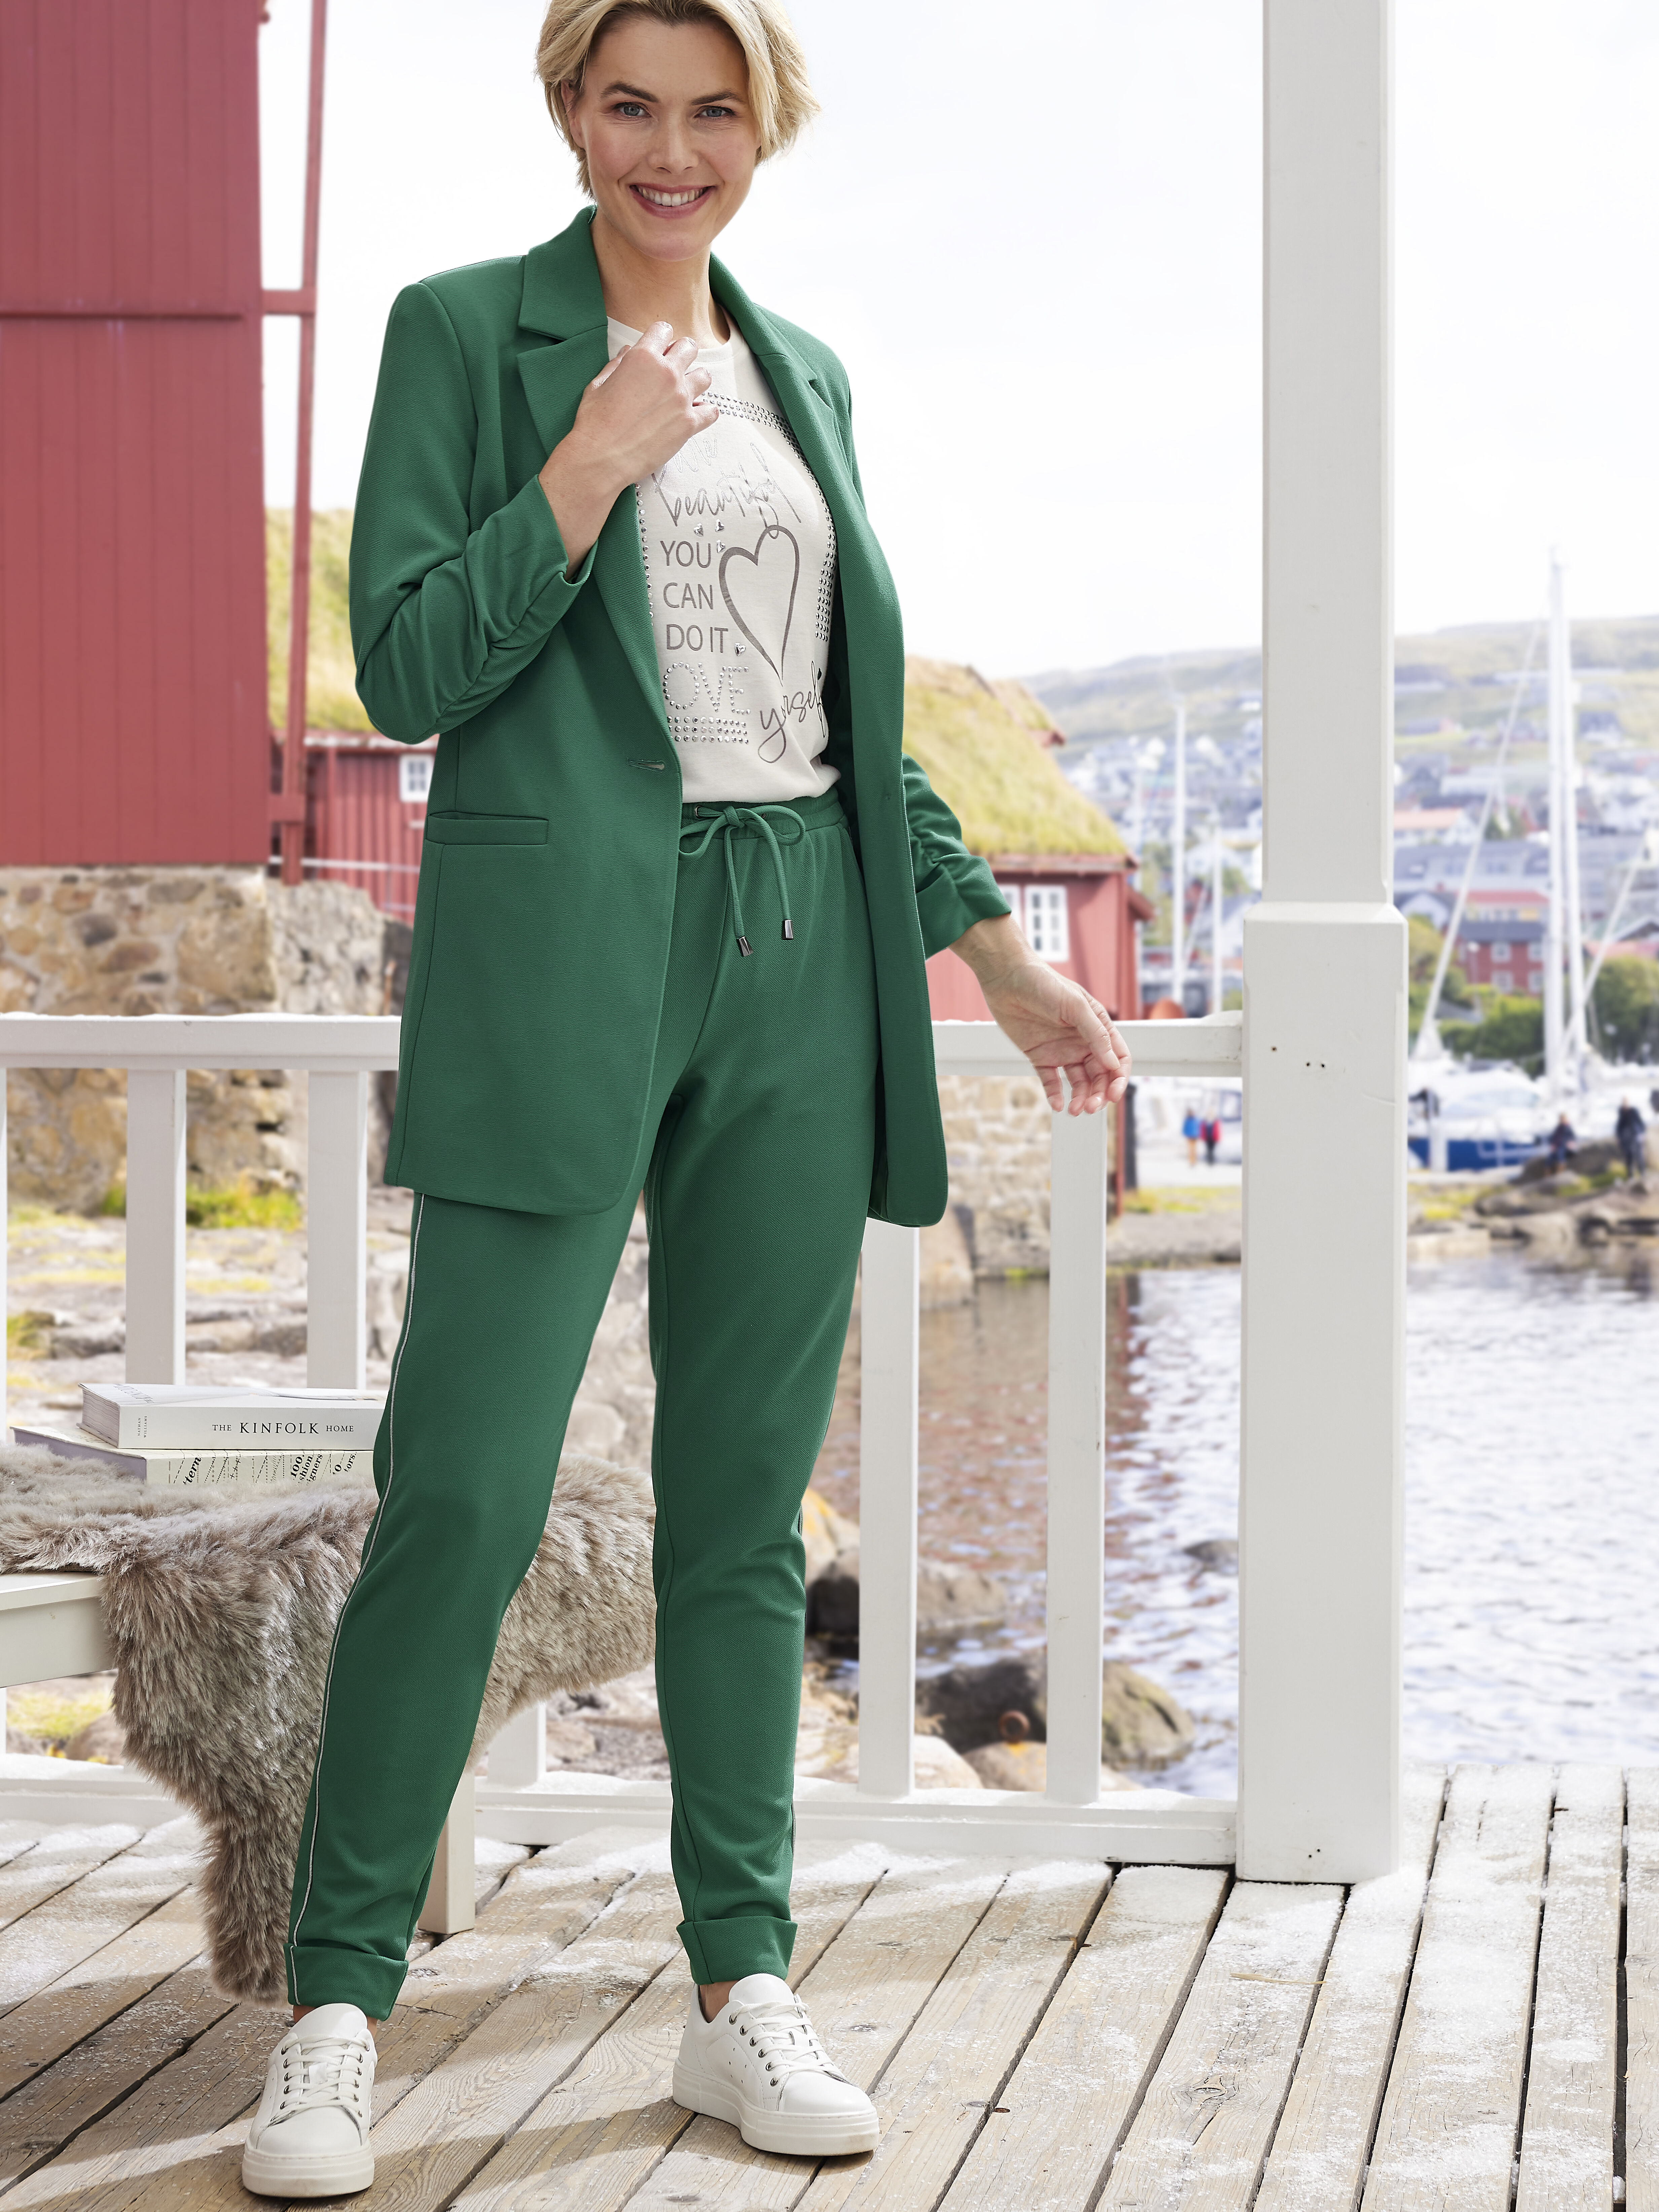 Wie kombiniert man am besten grüne Kleidung | KLiNGEL